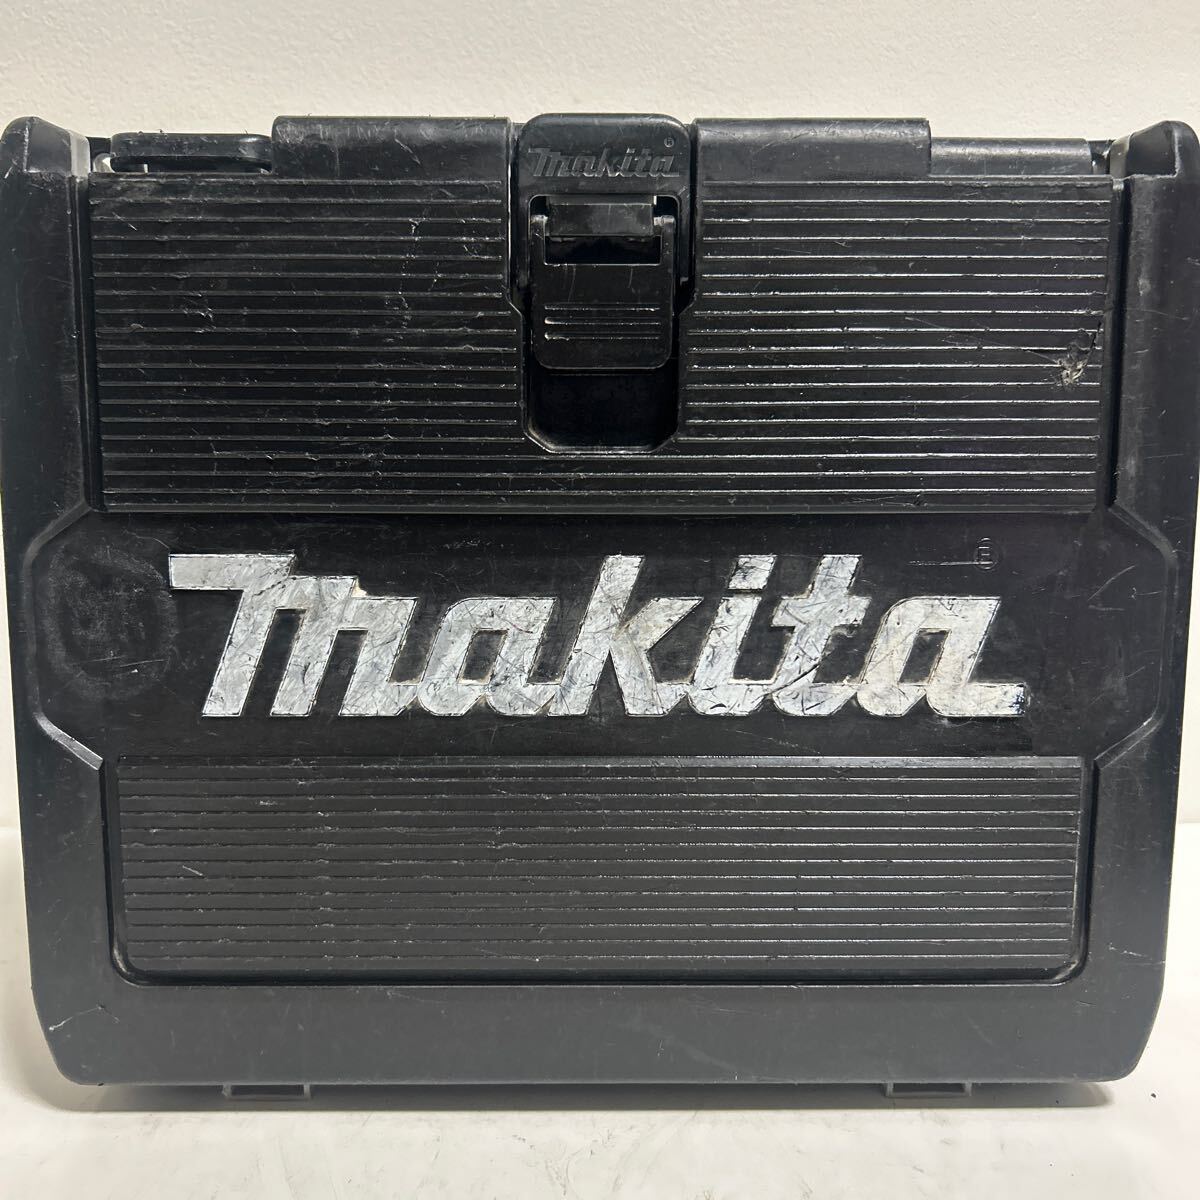  Makita ударный инструмент TD171D рабочий товар заряжающийся ударный инструмент Makita ударный инструмент заряжающийся makita 18V аккумулятор электроинструмент 